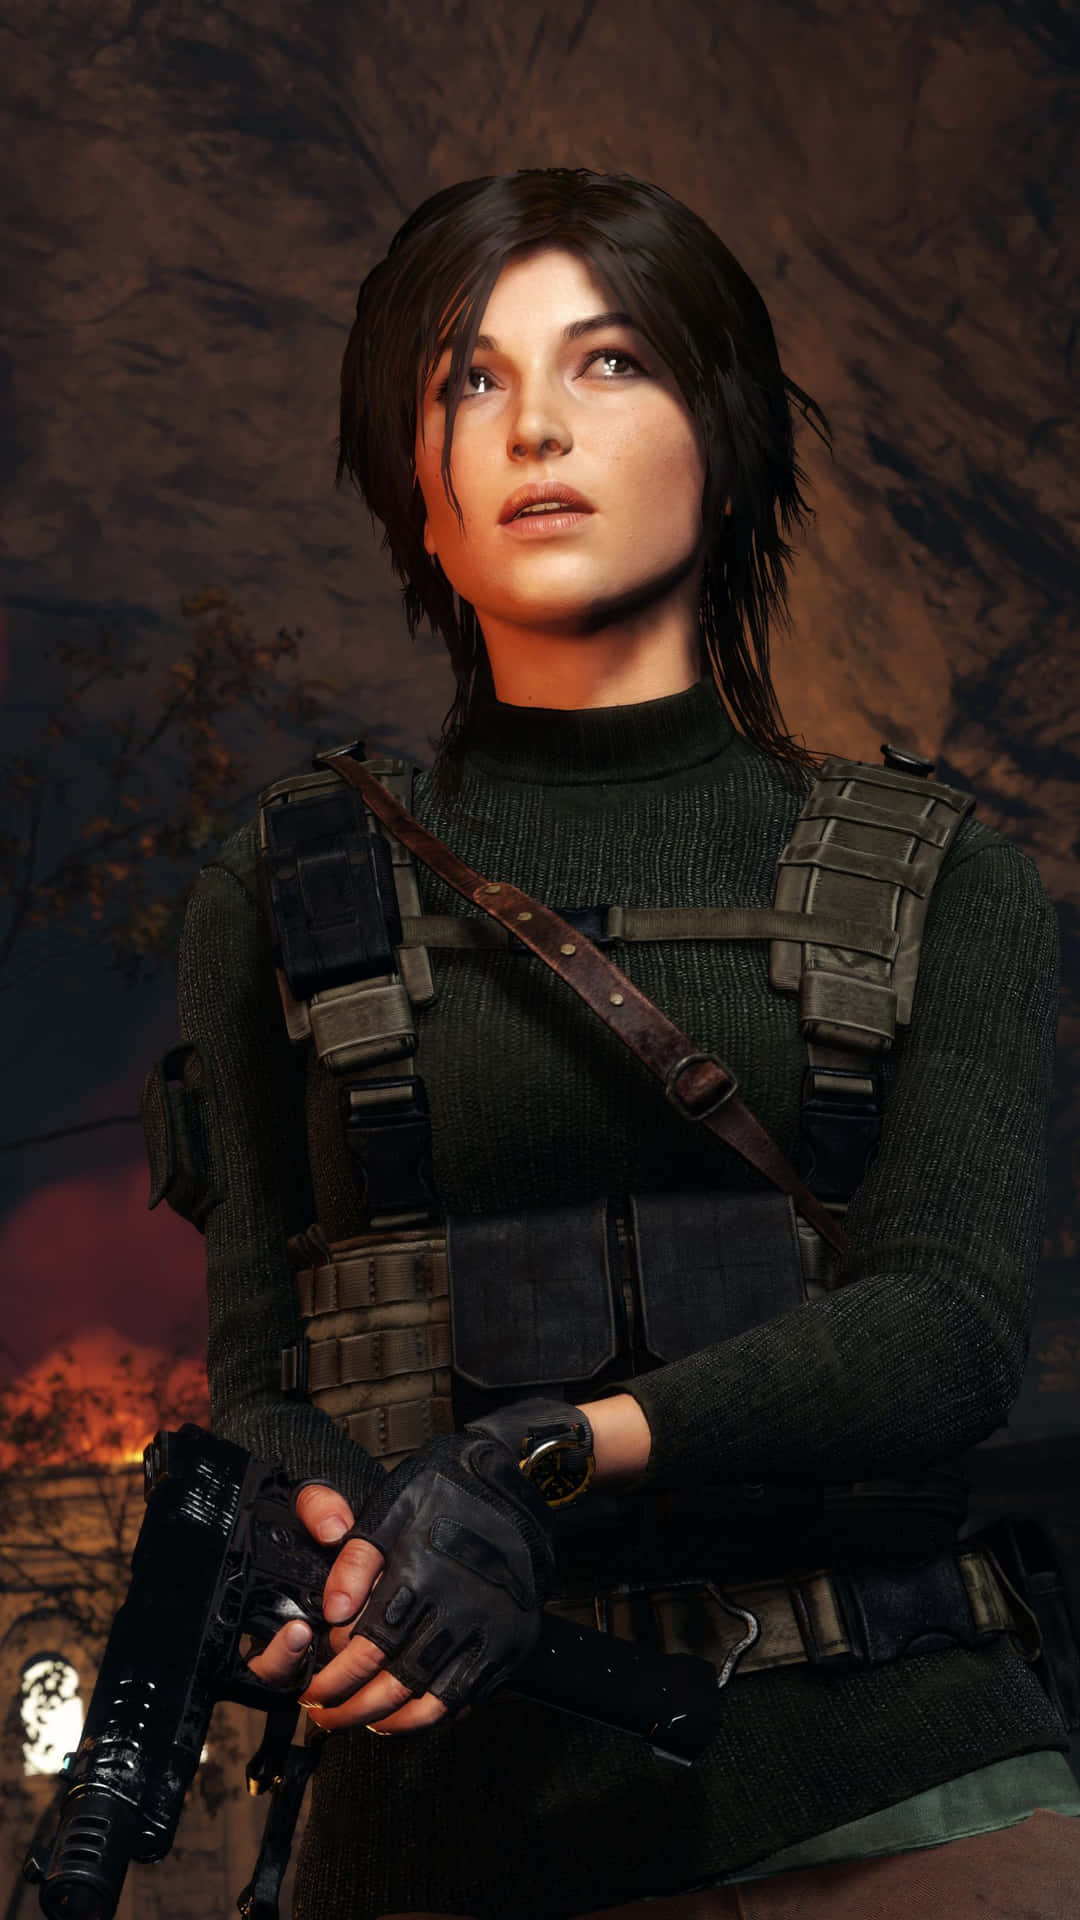 Spielensie Tomb Raider, Das Ikonische Action-abenteuerspiel, Auf Ihrem Iphone 5s. Wallpaper